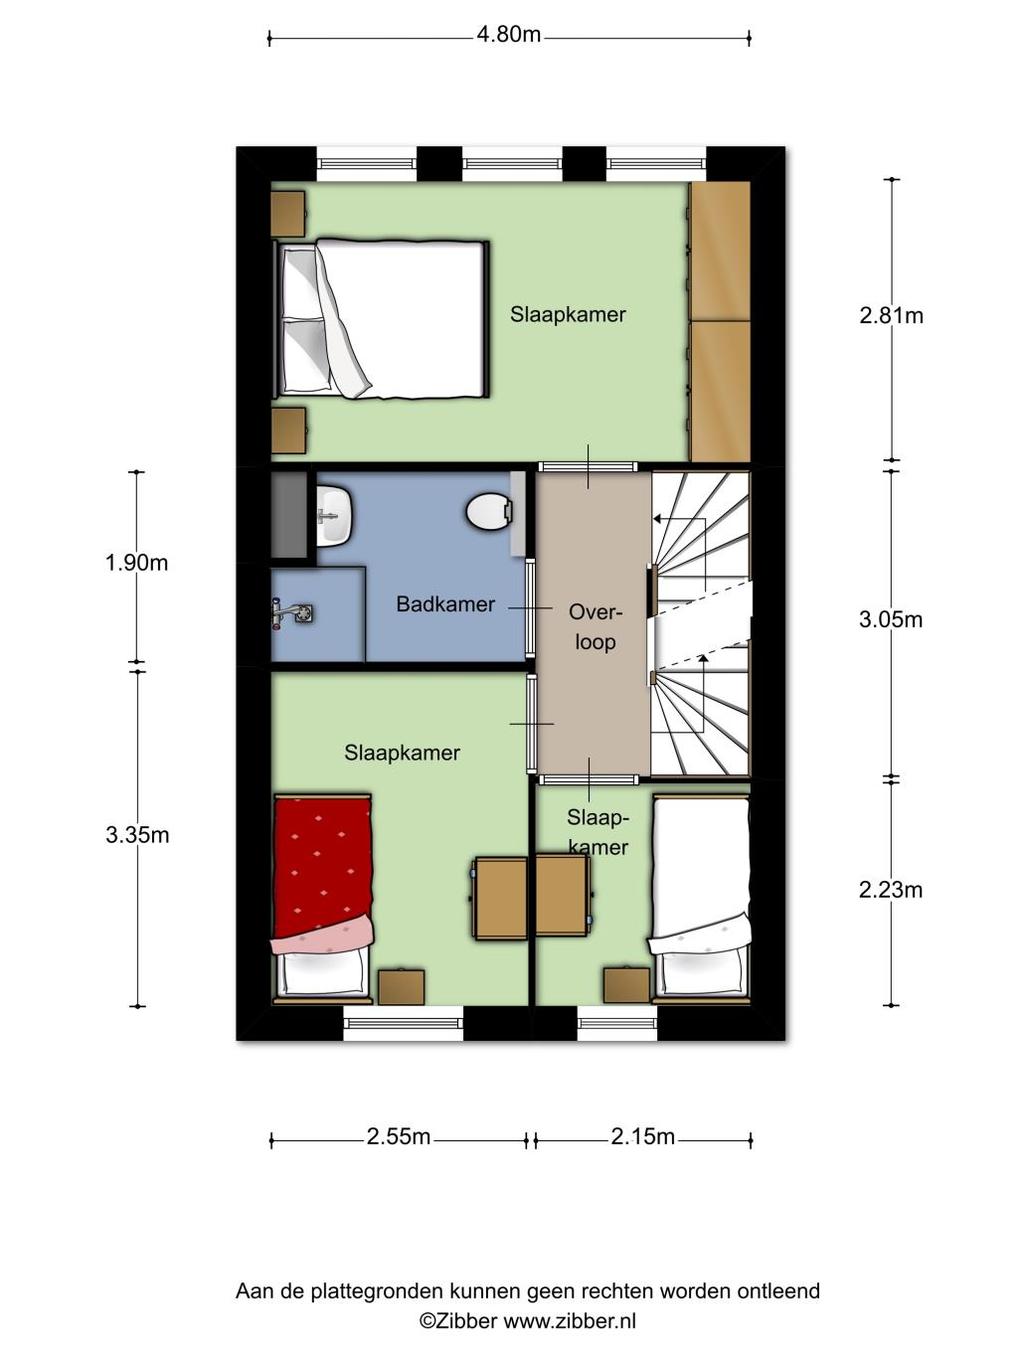 Plattegrond 1e verdieping(optie met 3 slaapkamers)